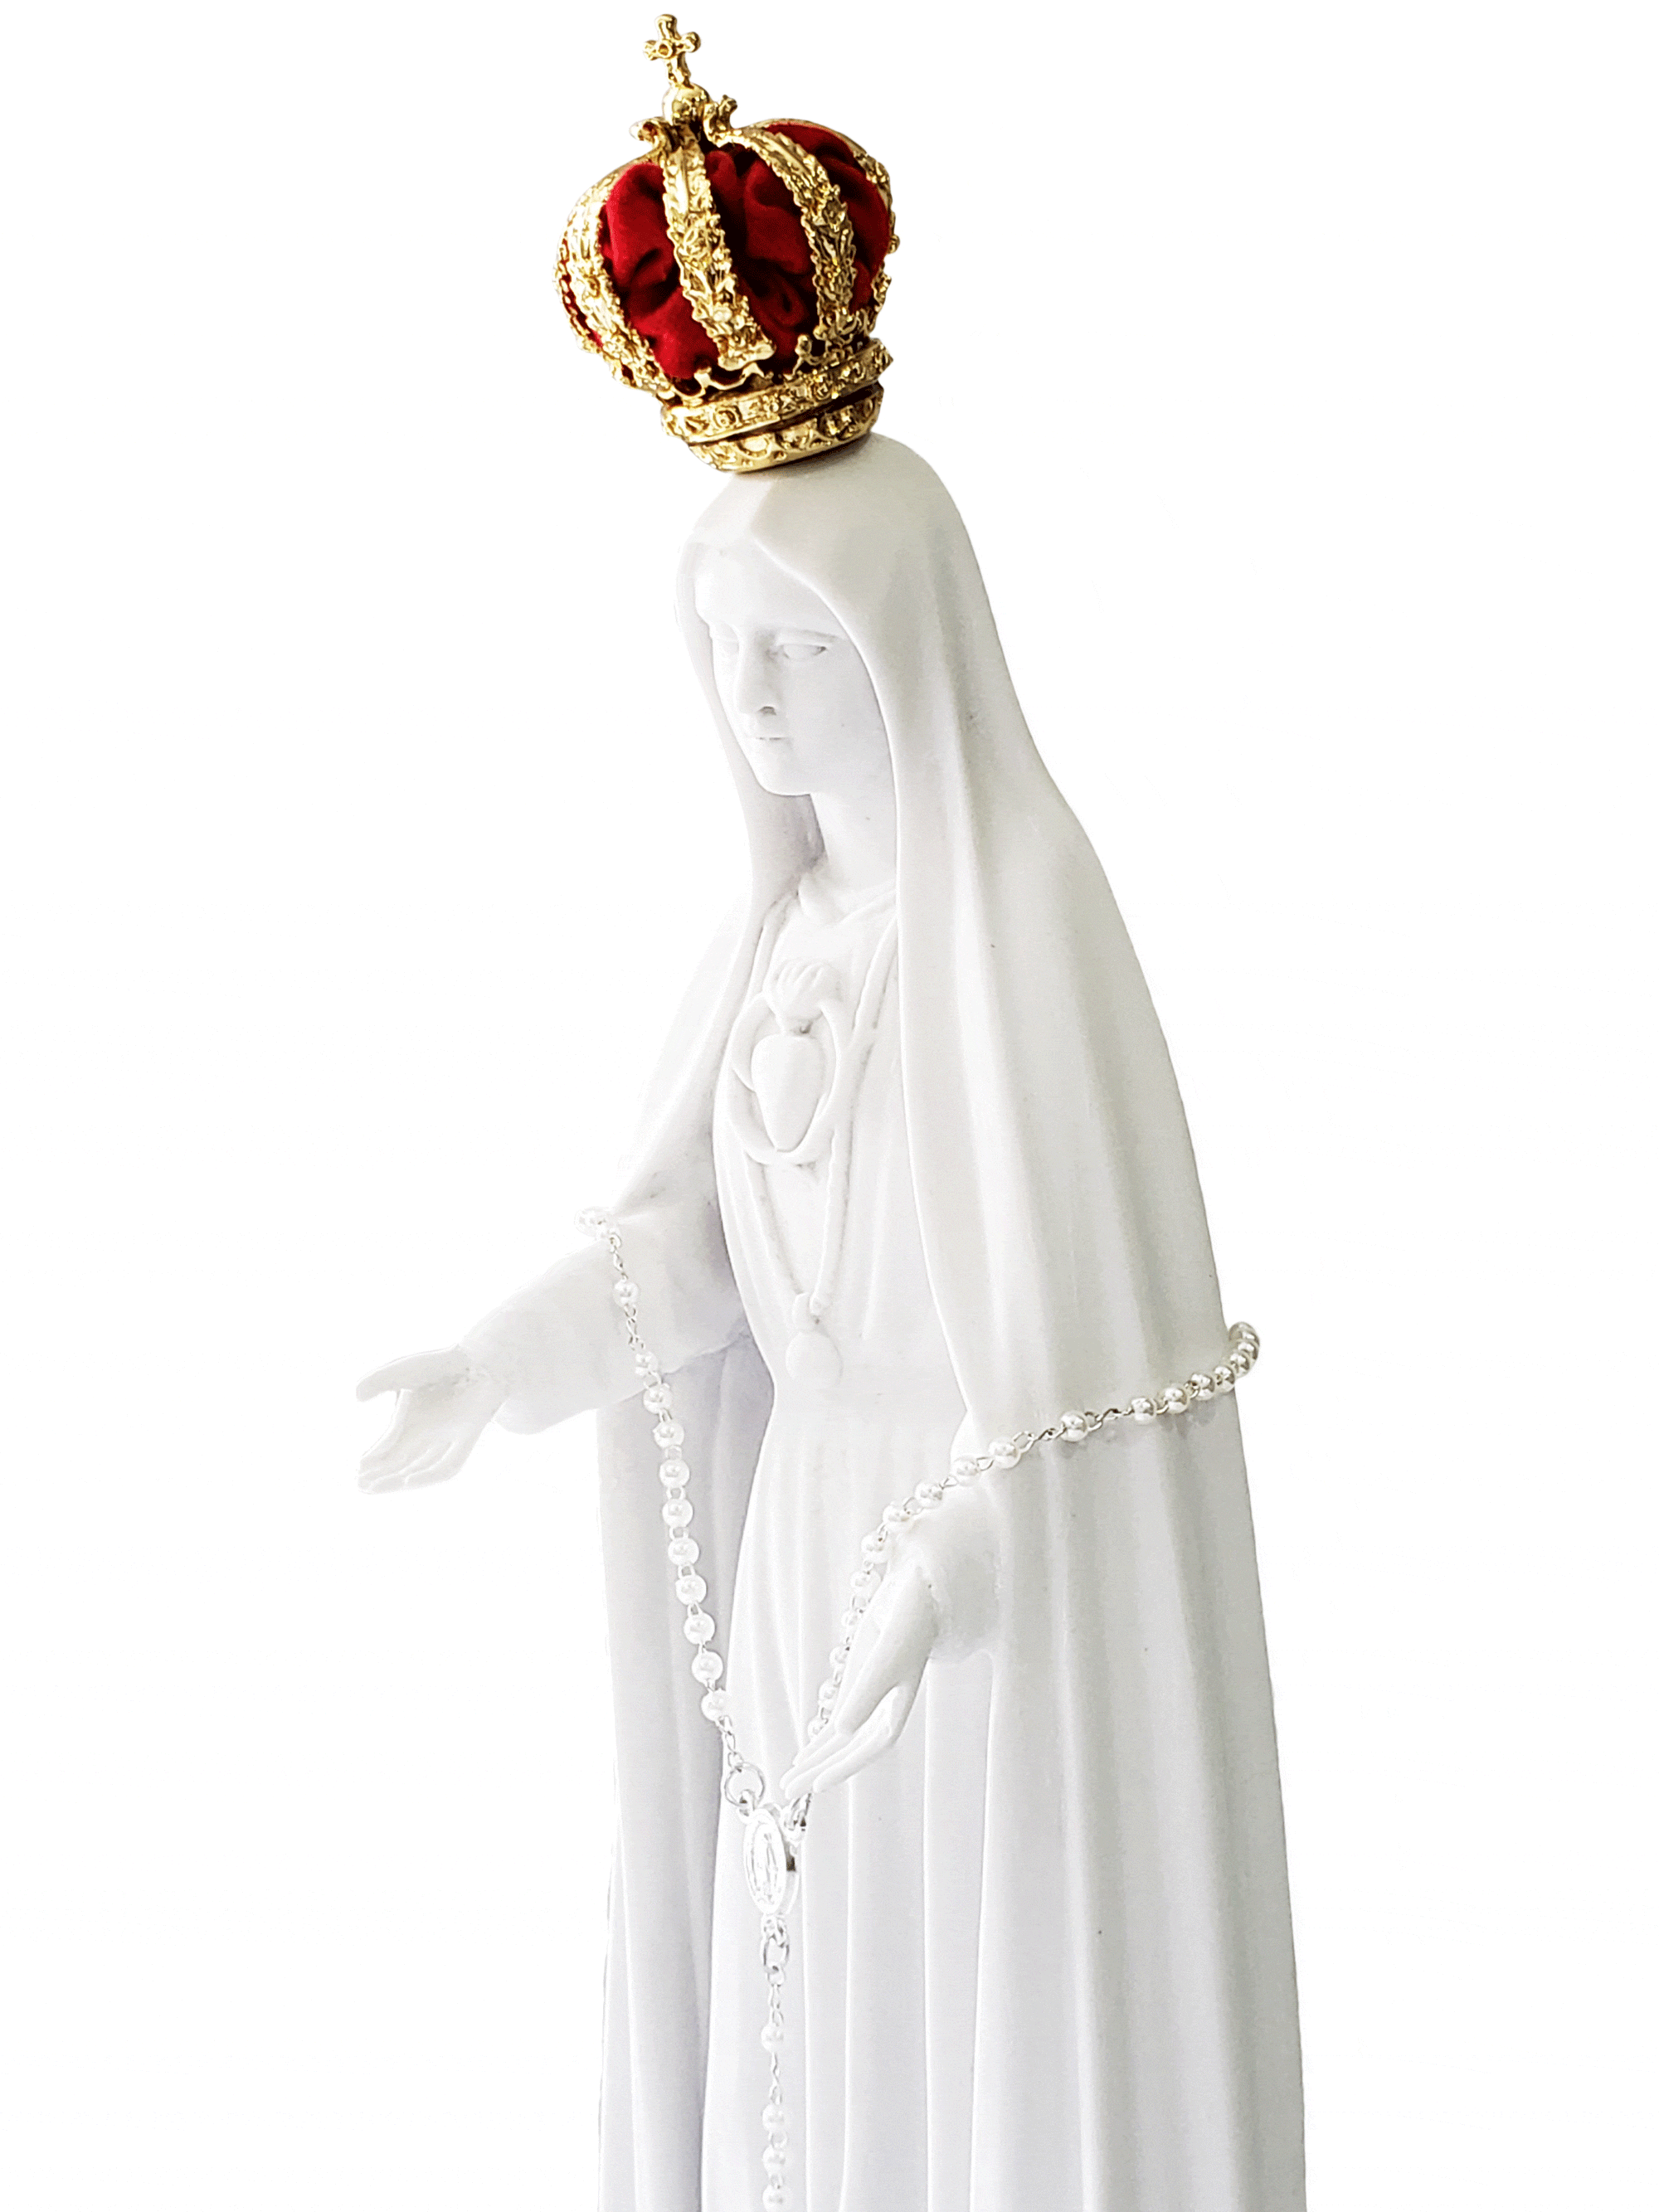 Imagem de Nossa Senhora do Imaculado Coração Fátima 34 cm em Pó de Mármore